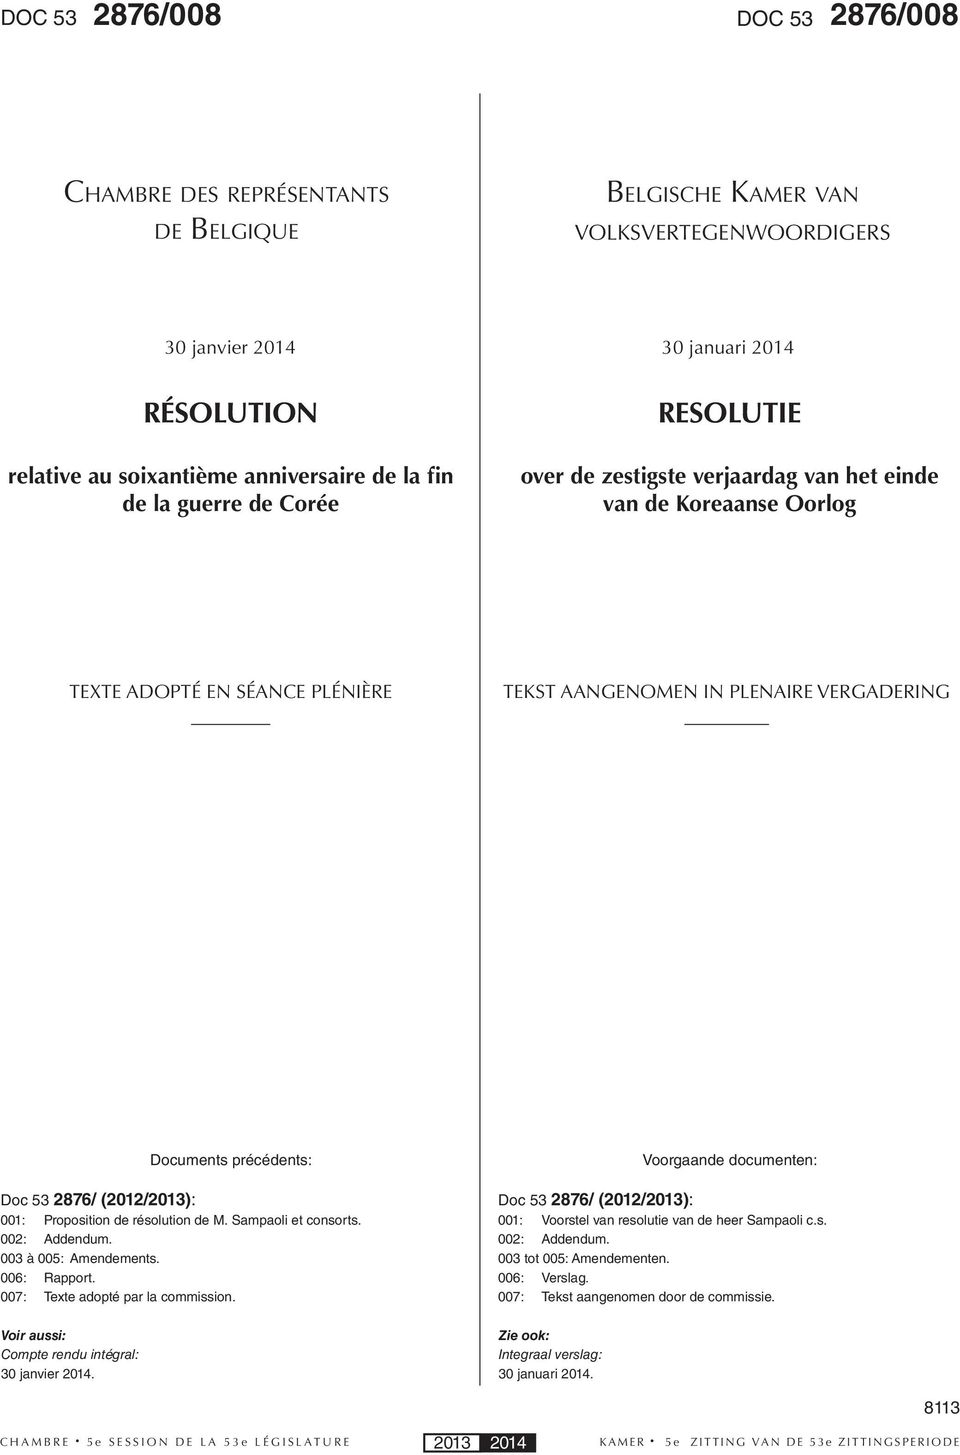 précédents: Doc 53 2876/ (2012/2013): 001: Proposition de résolution de M. Sampaoli et consorts. 002: Addendum. 003 à 005: Amendements. 006: Rapport. 007: Texte adopté par la commission.